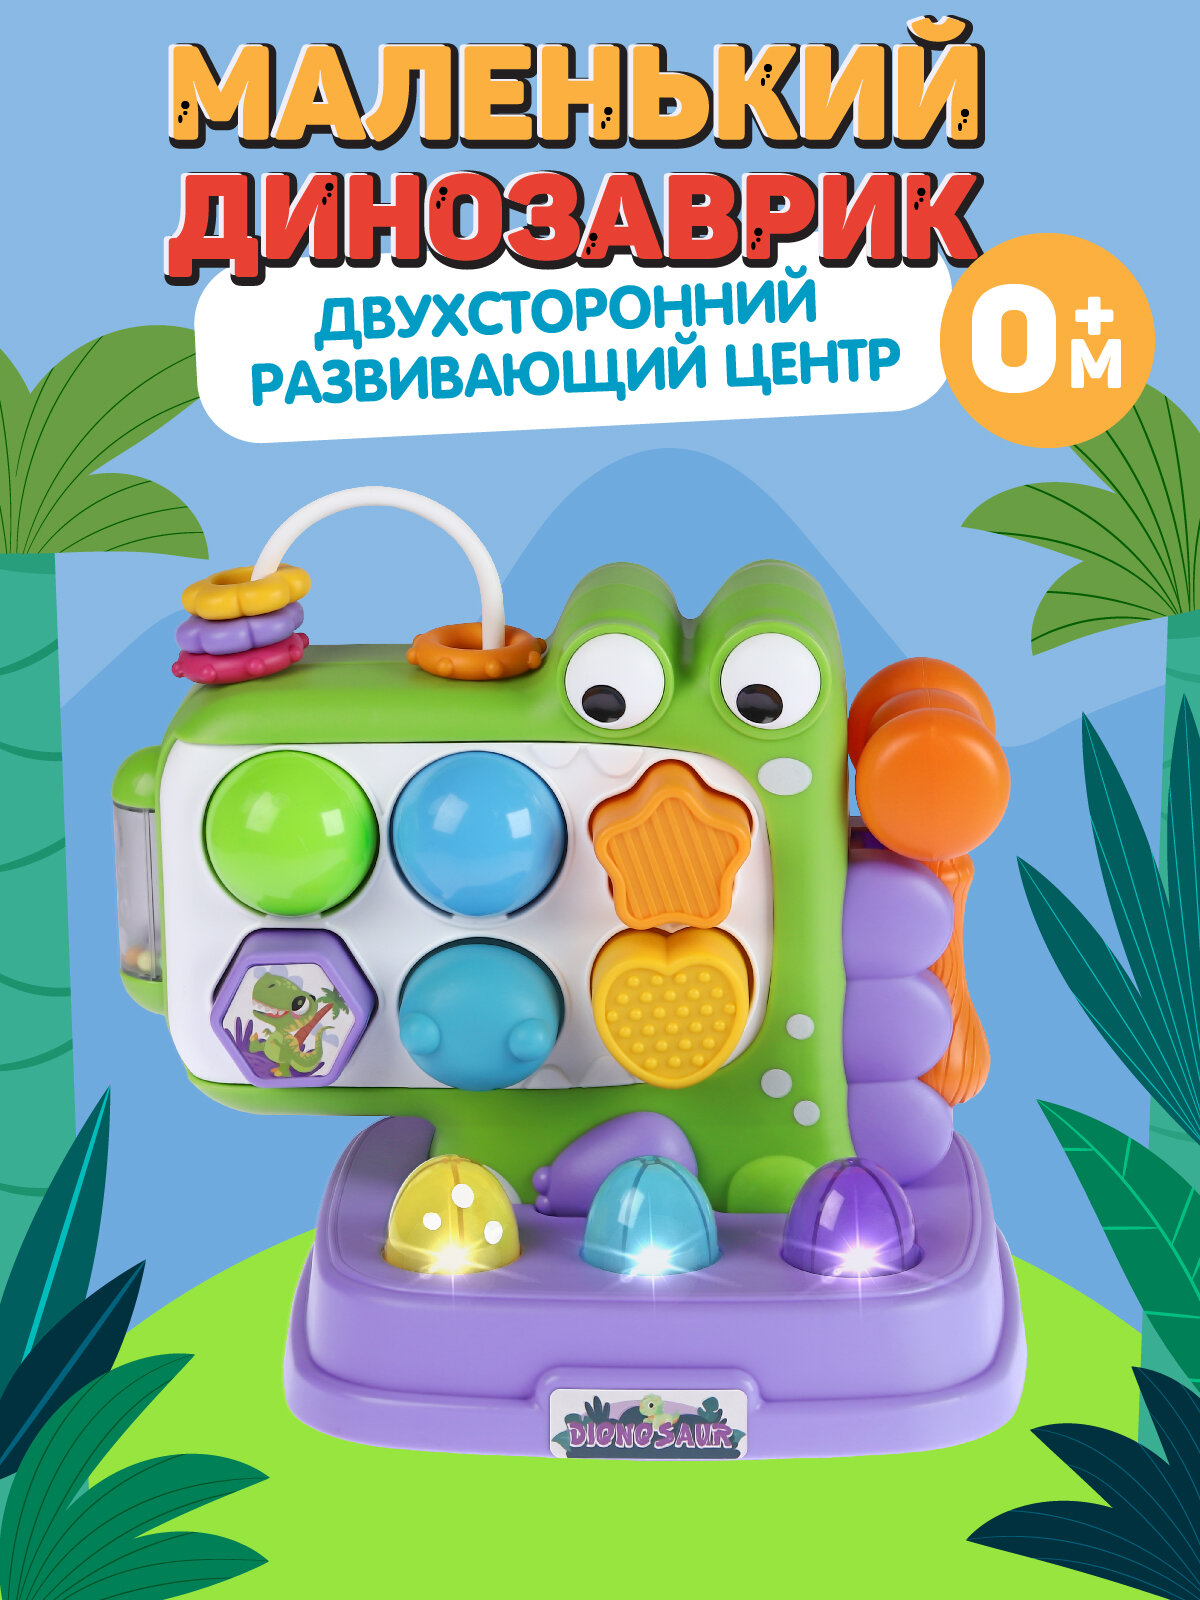 Развивающая игрушка Маленький динозаврик, элементы бизиборда/сортер, свет, звук, JB0334119